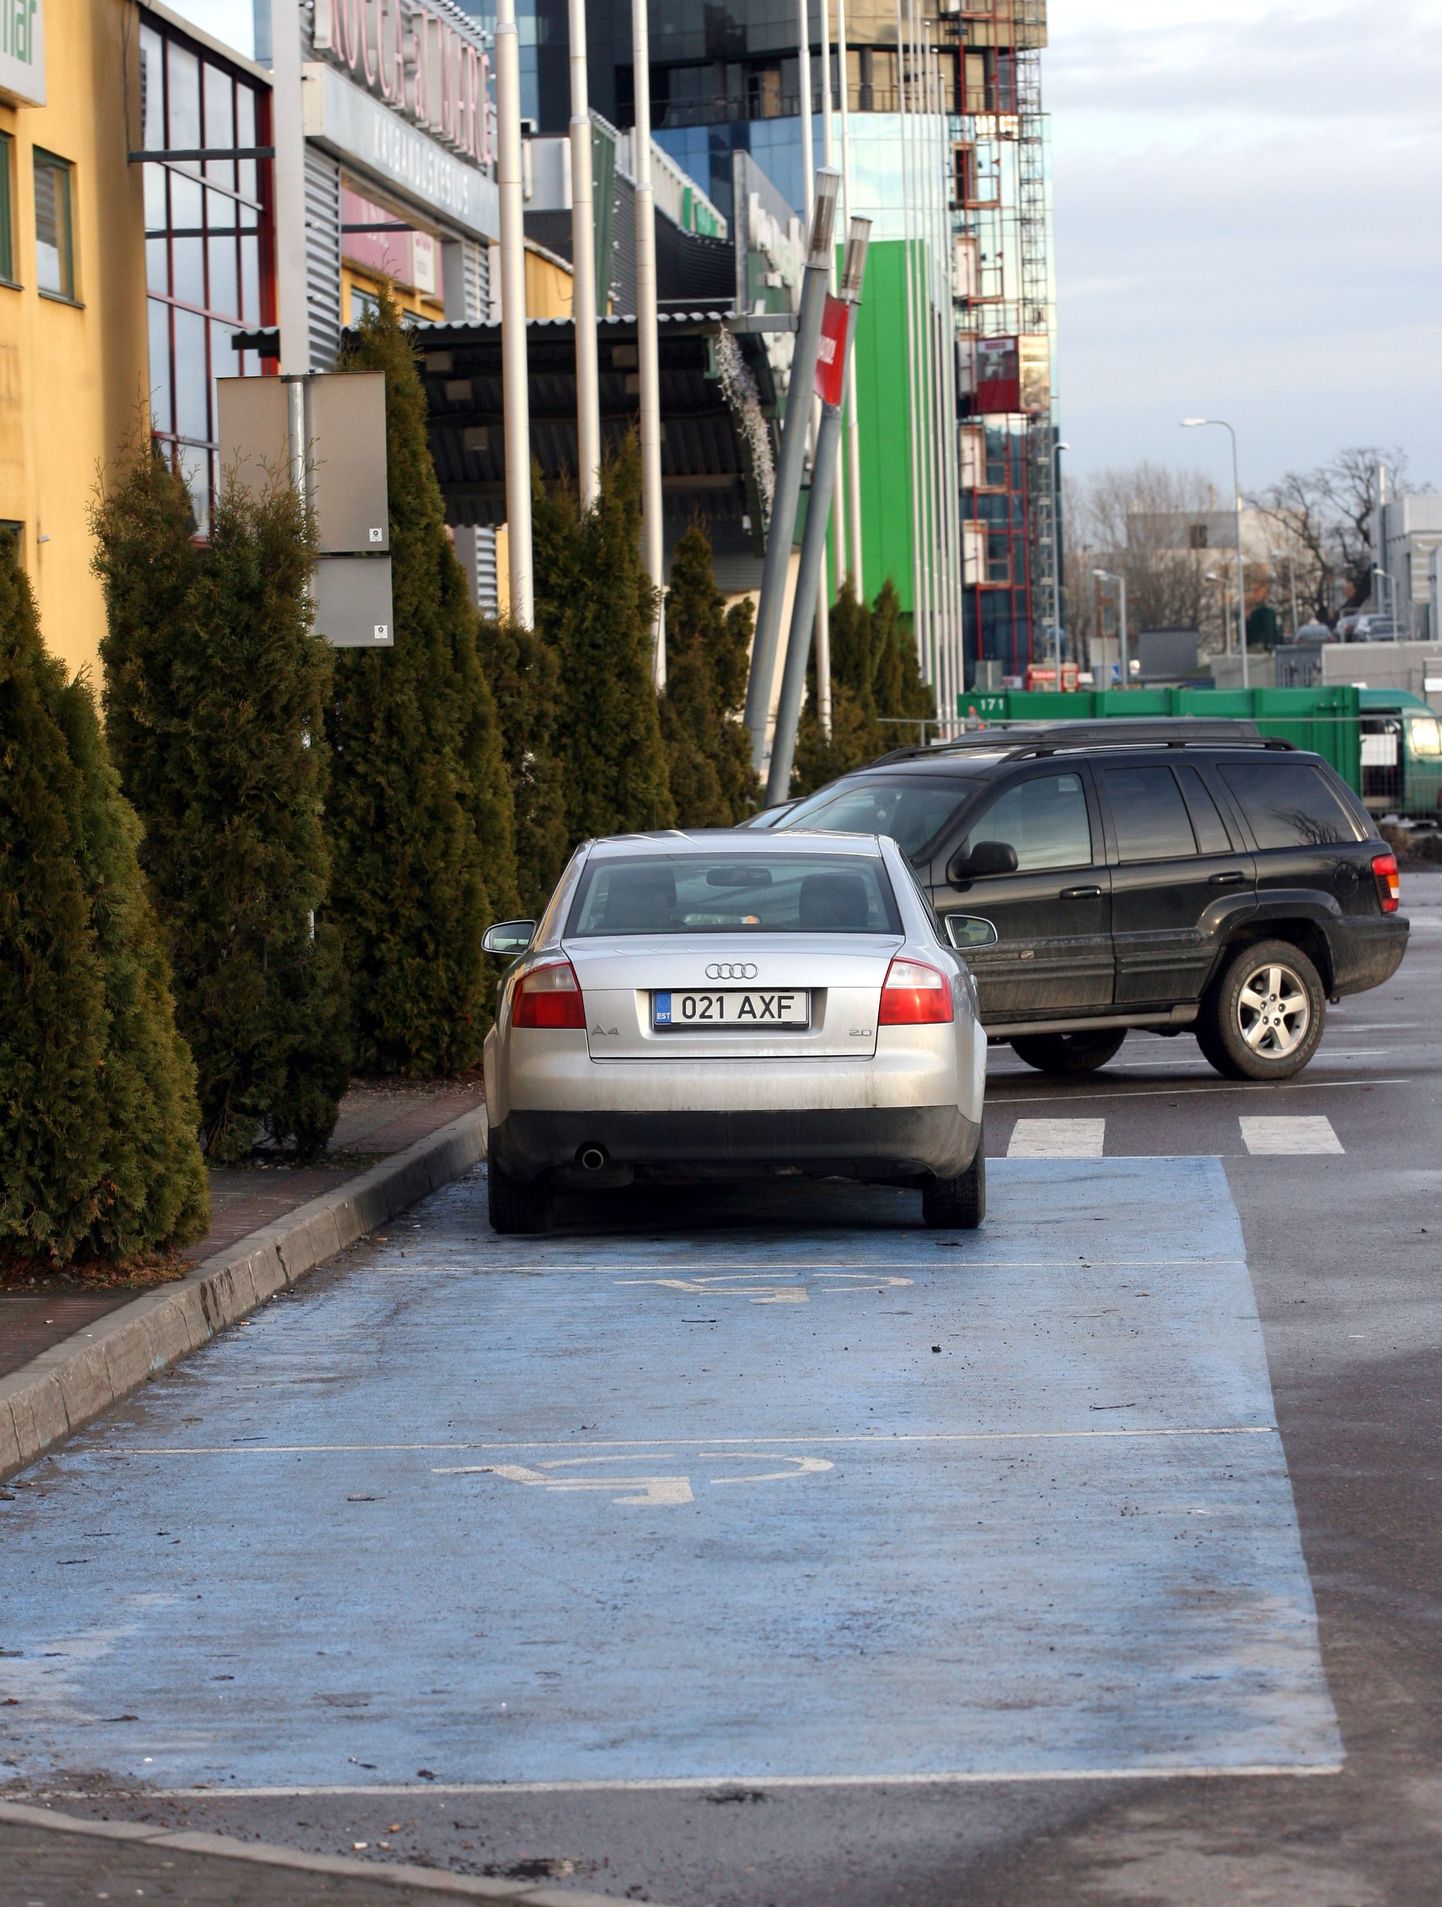 Sageli tuleb ette, et terved inimesed pargivad oma auto invaliidide sõidukitele mõeldud kohale. Pildil oleval Audil on parkimist lubav
kaart siiski olemas.